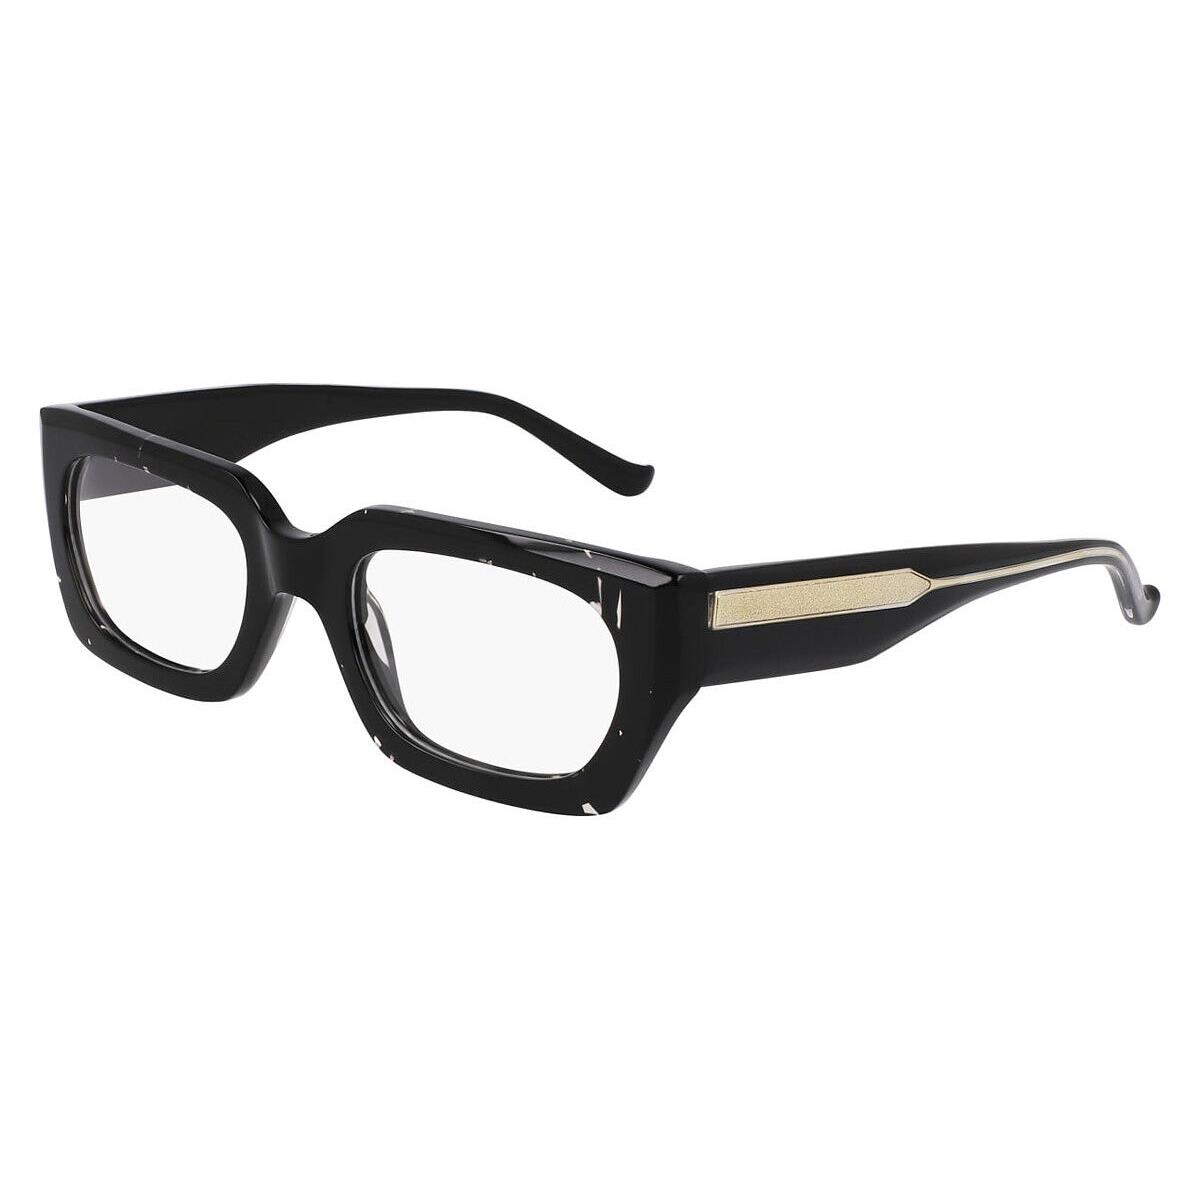 Dkny DO5013 Eyeglasses Women Spotted Black 51mm